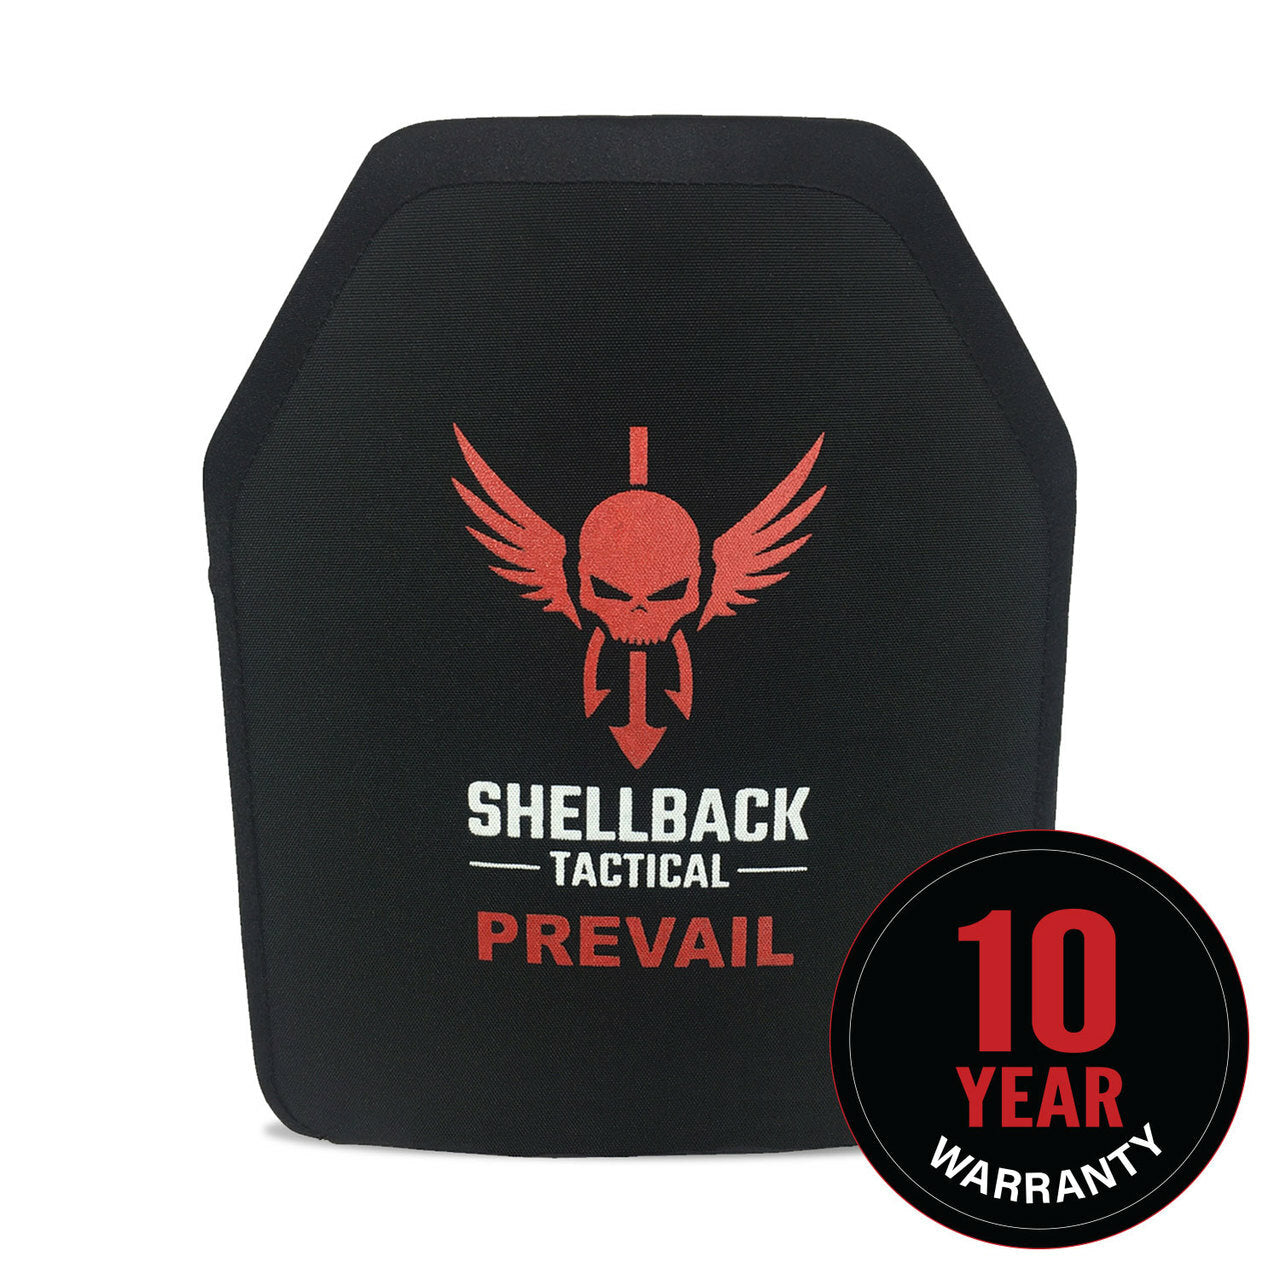 Shellback Tactical Pre-warned - 10 year warranty: Shellback Tactical Prevail Series Level IV Single Curve 10 x 12 Hard Armor Plate (Model 1155) - 10 year warranty.